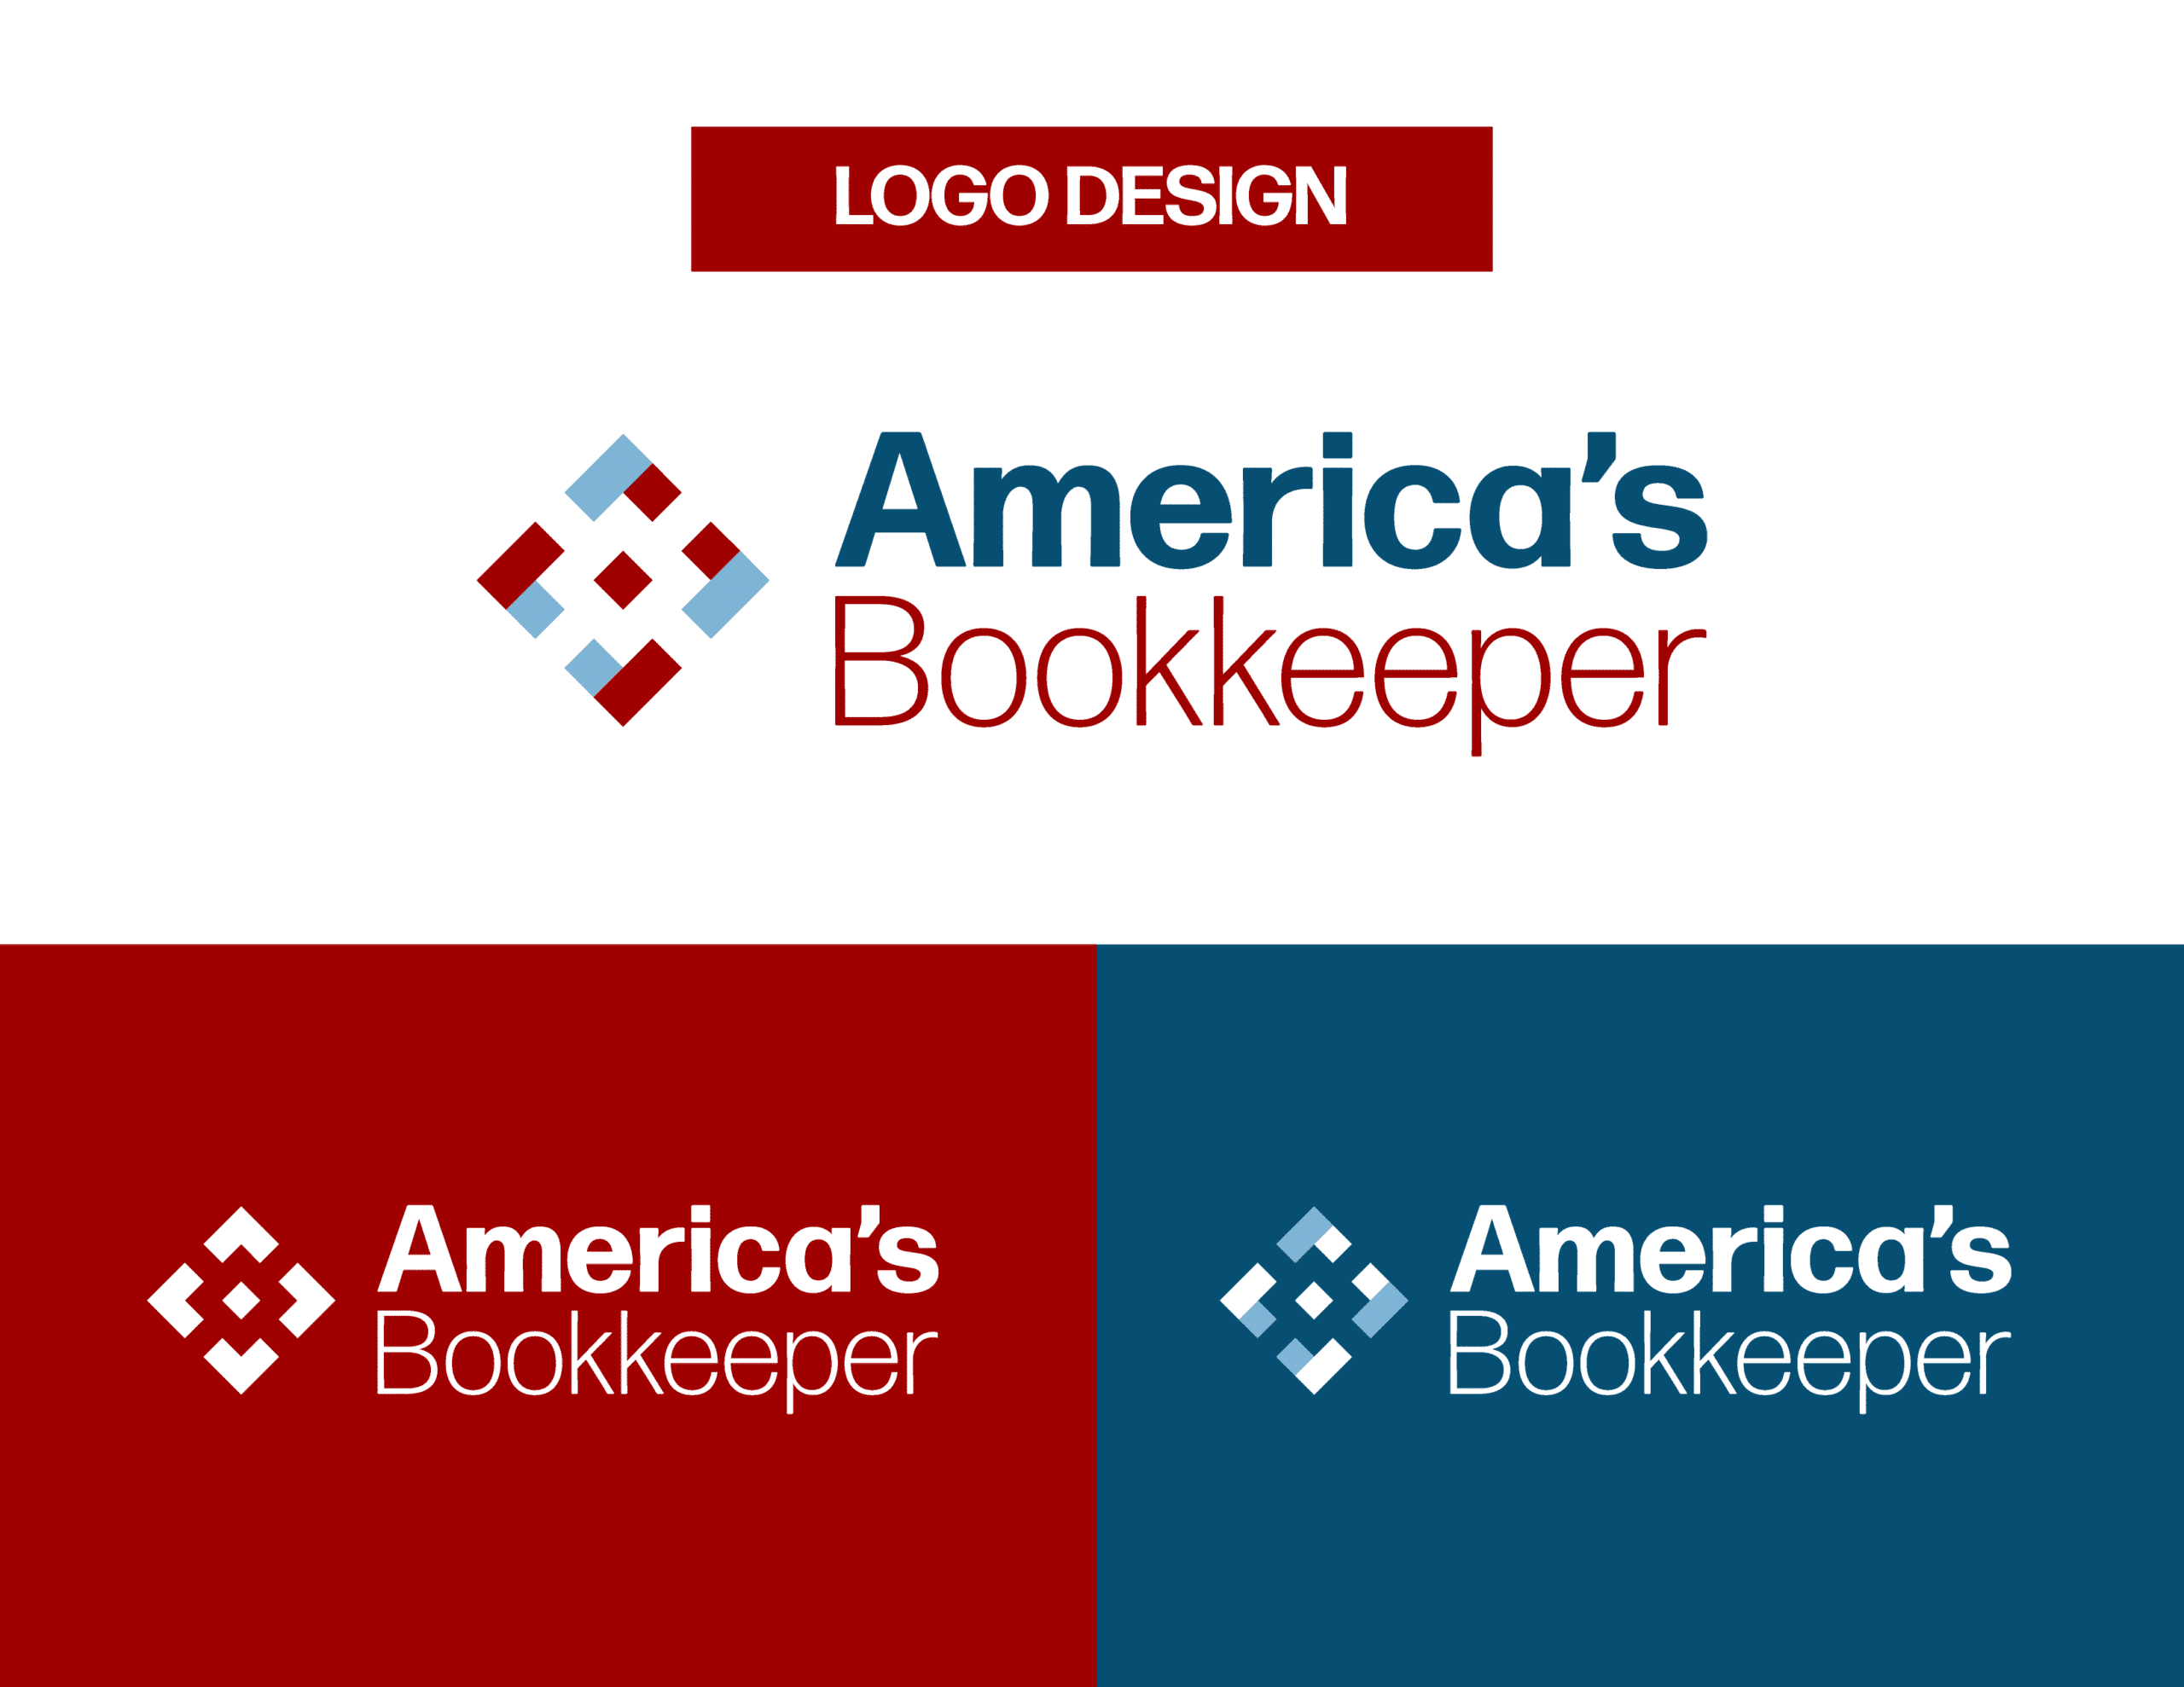 01Americas__Logo Design